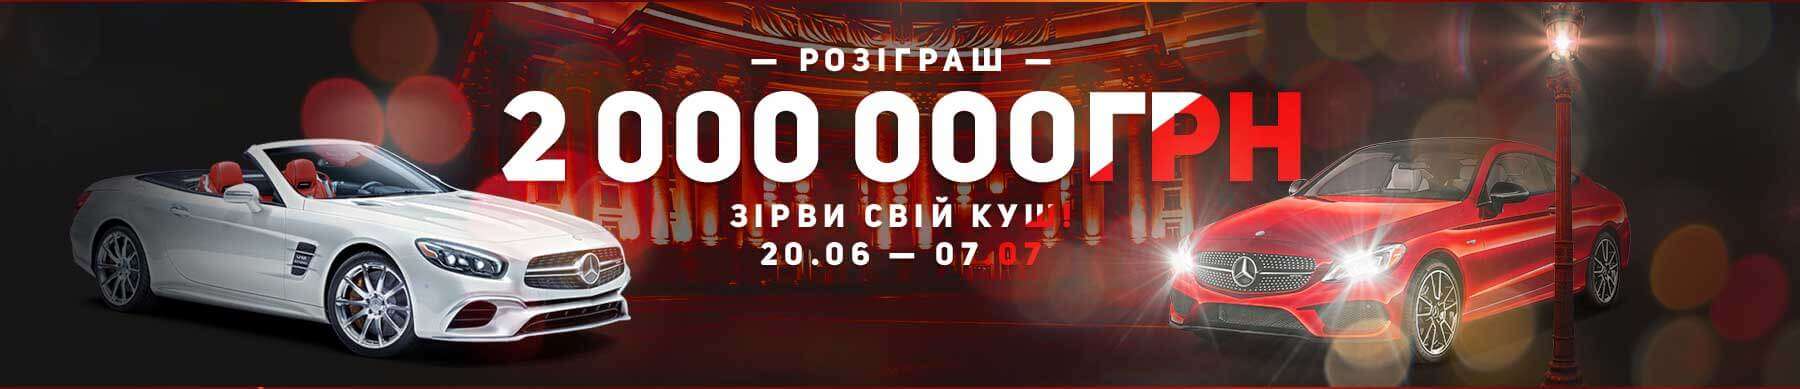 Розыгрыш 2000000 гривен в игровых автоматах на деньги